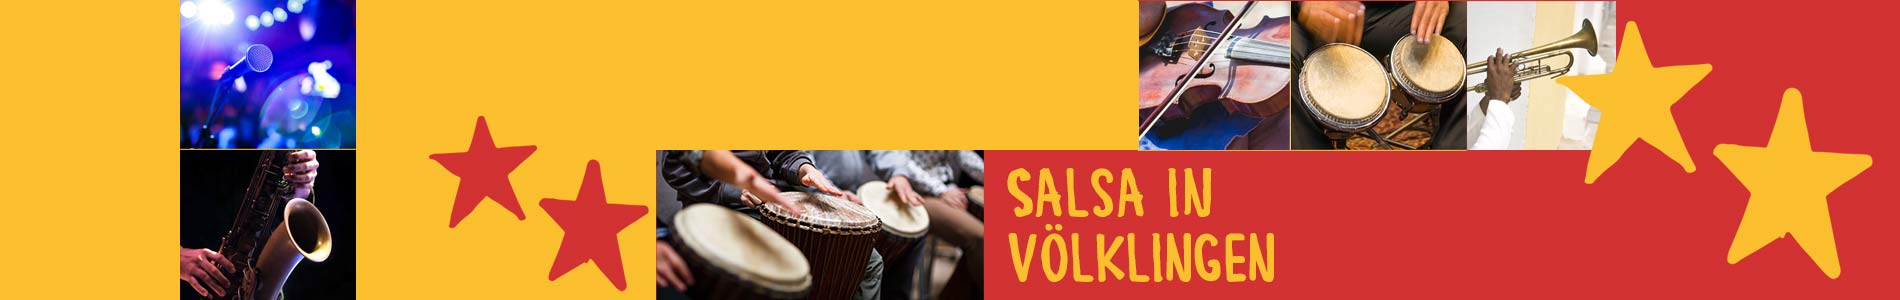 Salsa in Völklingen – Salsa lernen und tanzen, Tanzkurse, Partys, Veranstaltungen